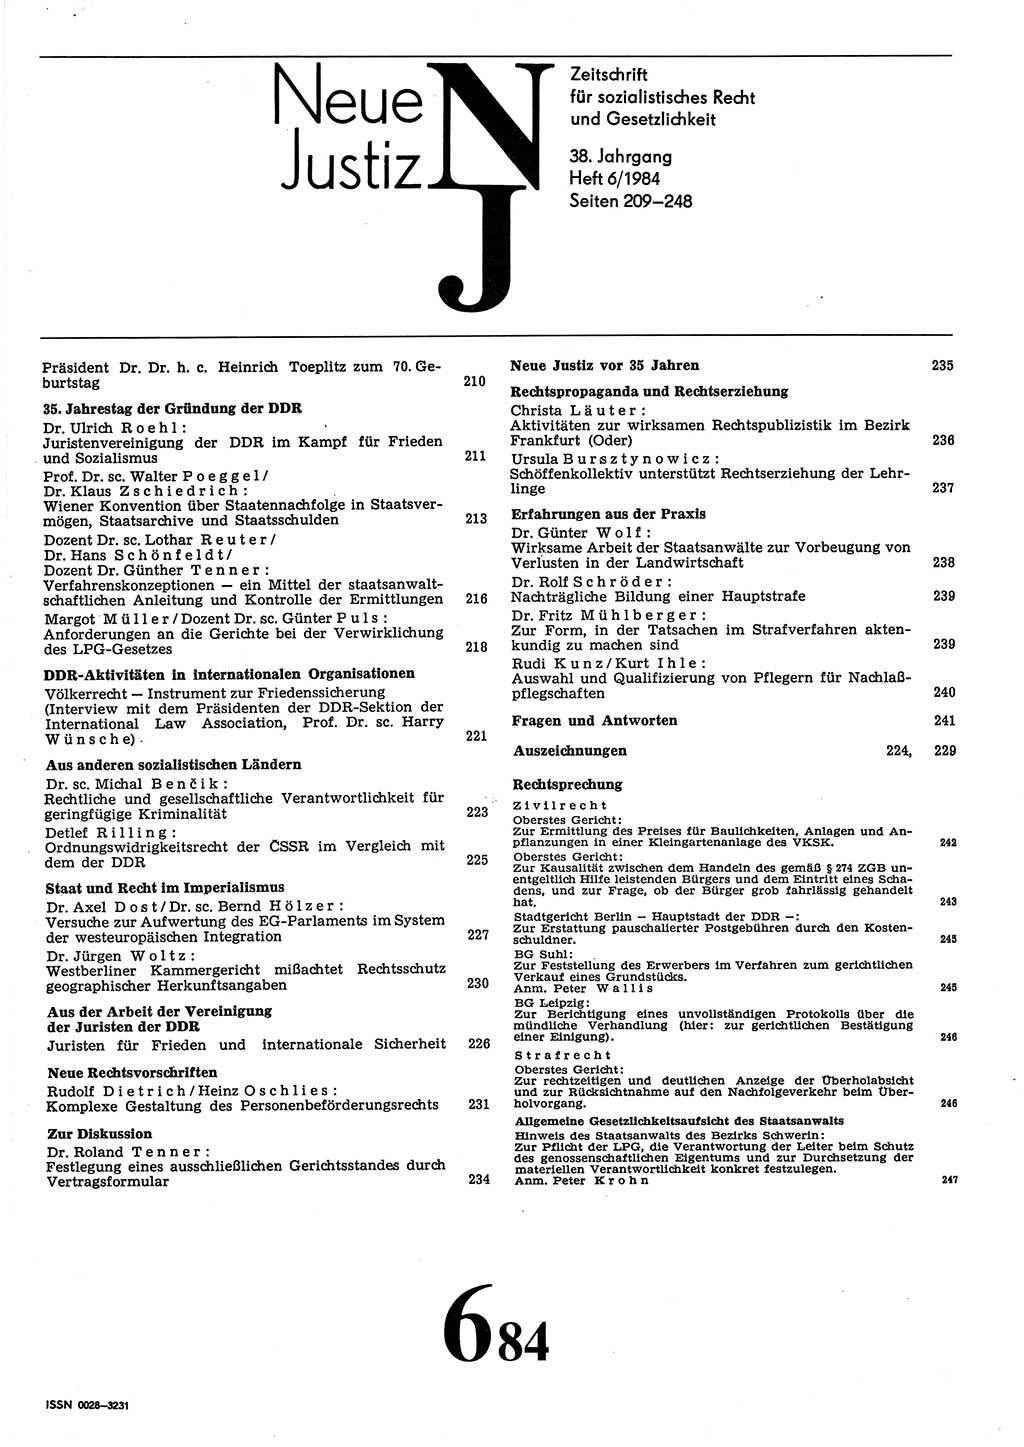 Neue Justiz (NJ), Zeitschrift für sozialistisches Recht und Gesetzlichkeit [Deutsche Demokratische Republik (DDR)], 38. Jahrgang 1984, Seite 209 (NJ DDR 1984, S. 209)